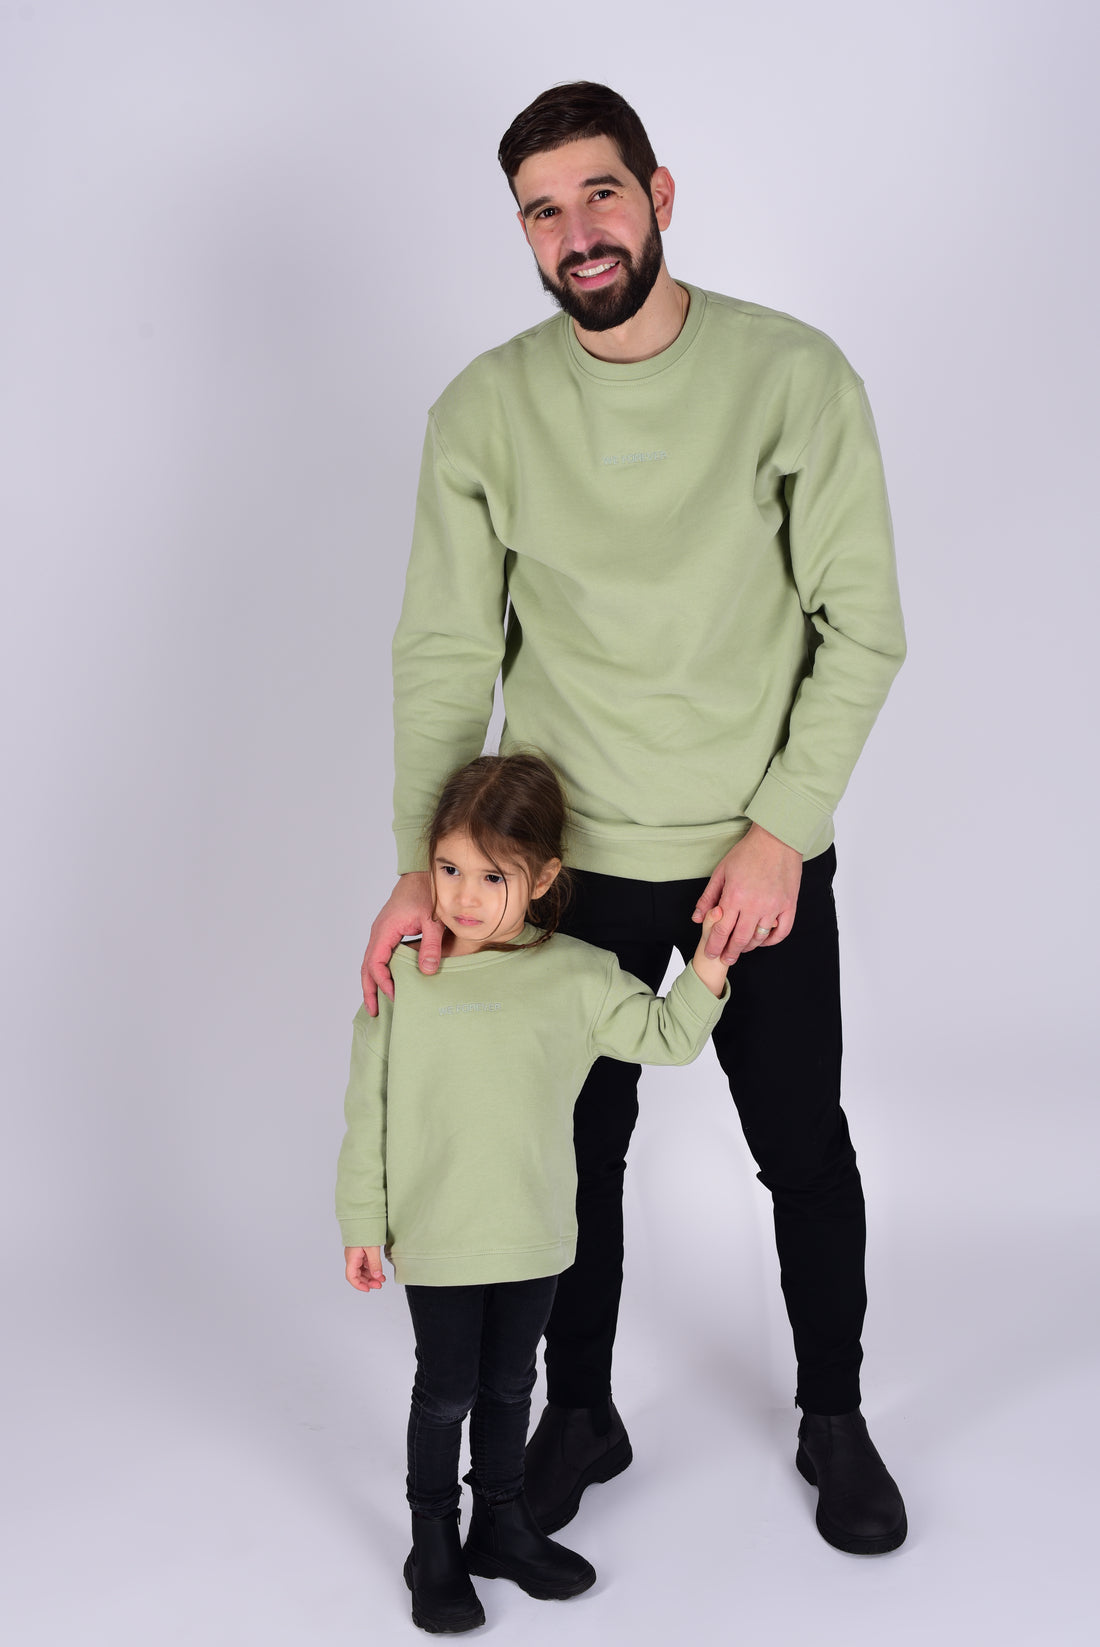 Kids Sweater 100% BIO-Baumwolle in Grün